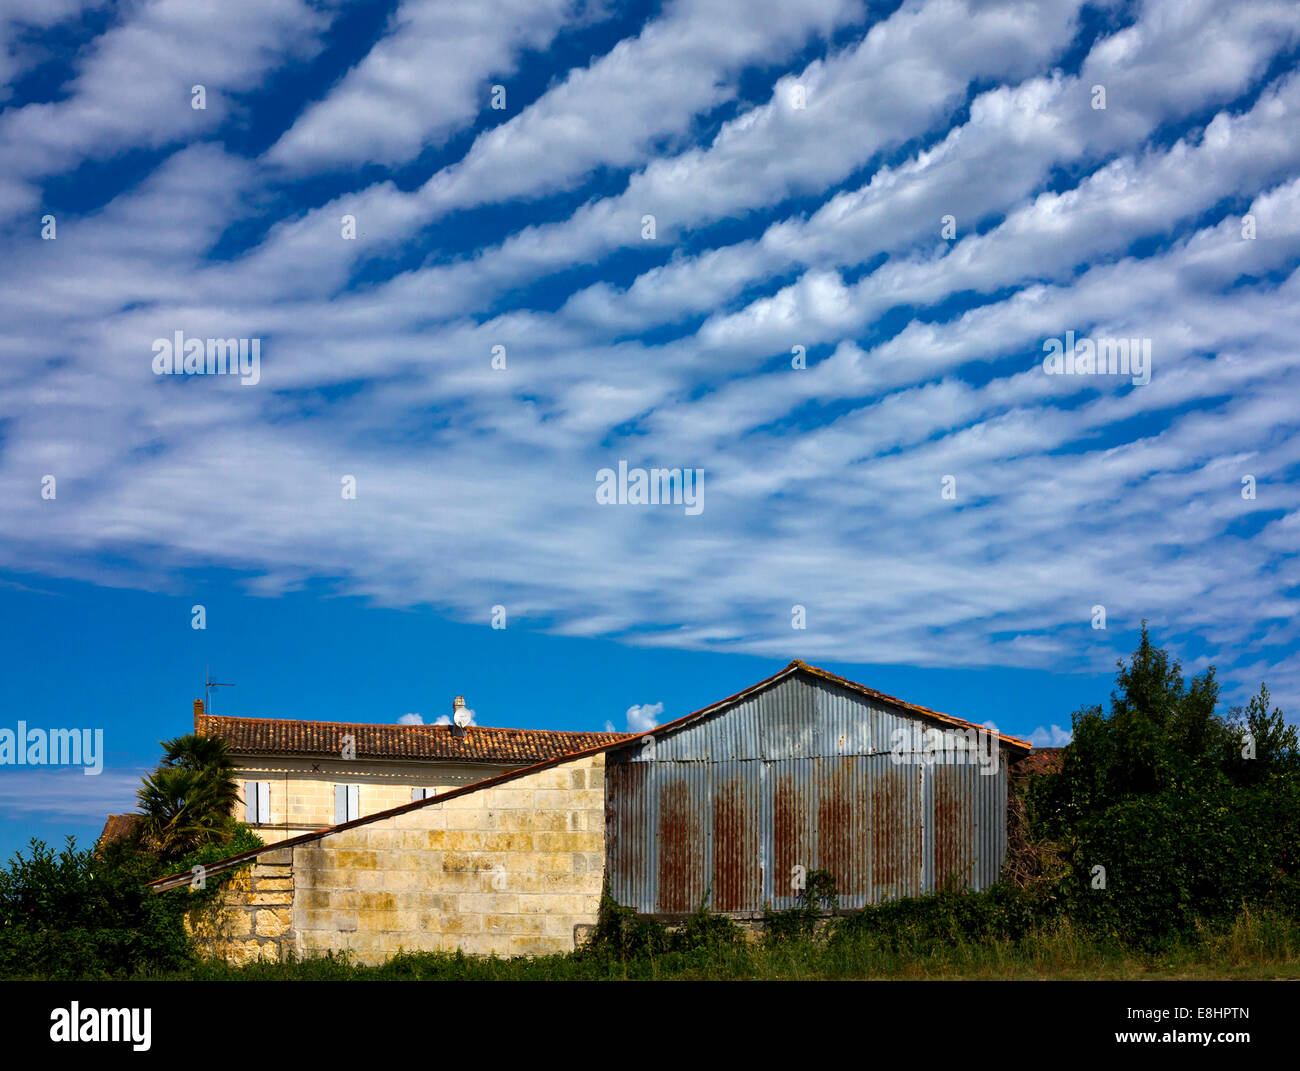 Cirrus nuvole in una tipica configurazione a strisce contro un cielo blu con edifici agricoli al di sotto di Foto Stock